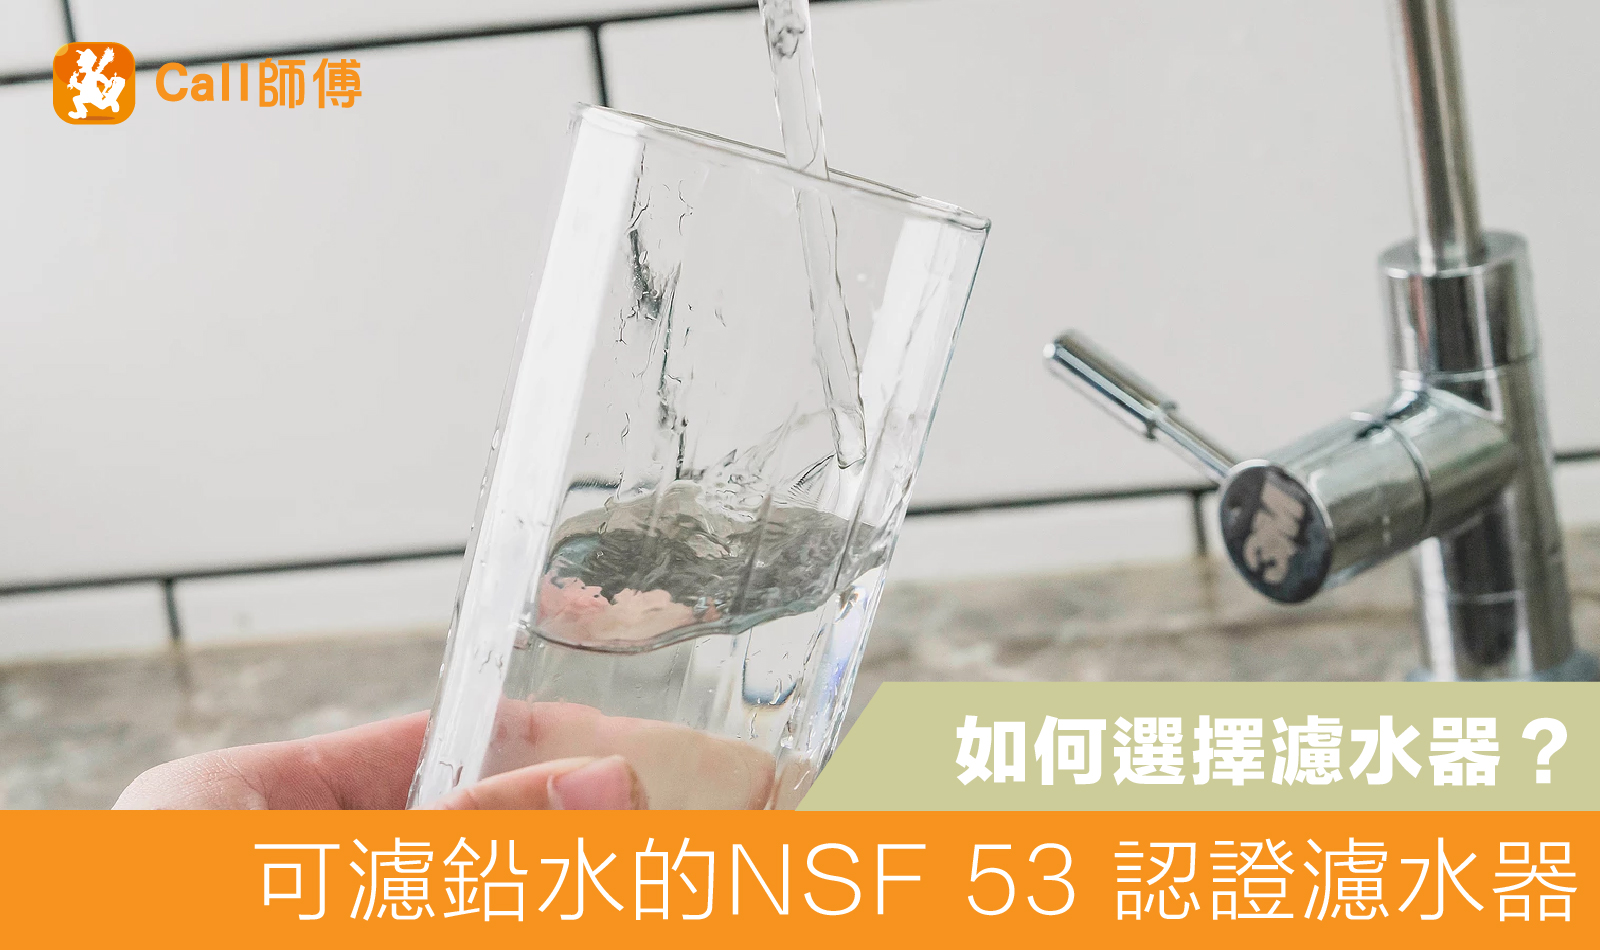 可濾鉛水的 NSF 53 認證濾水器